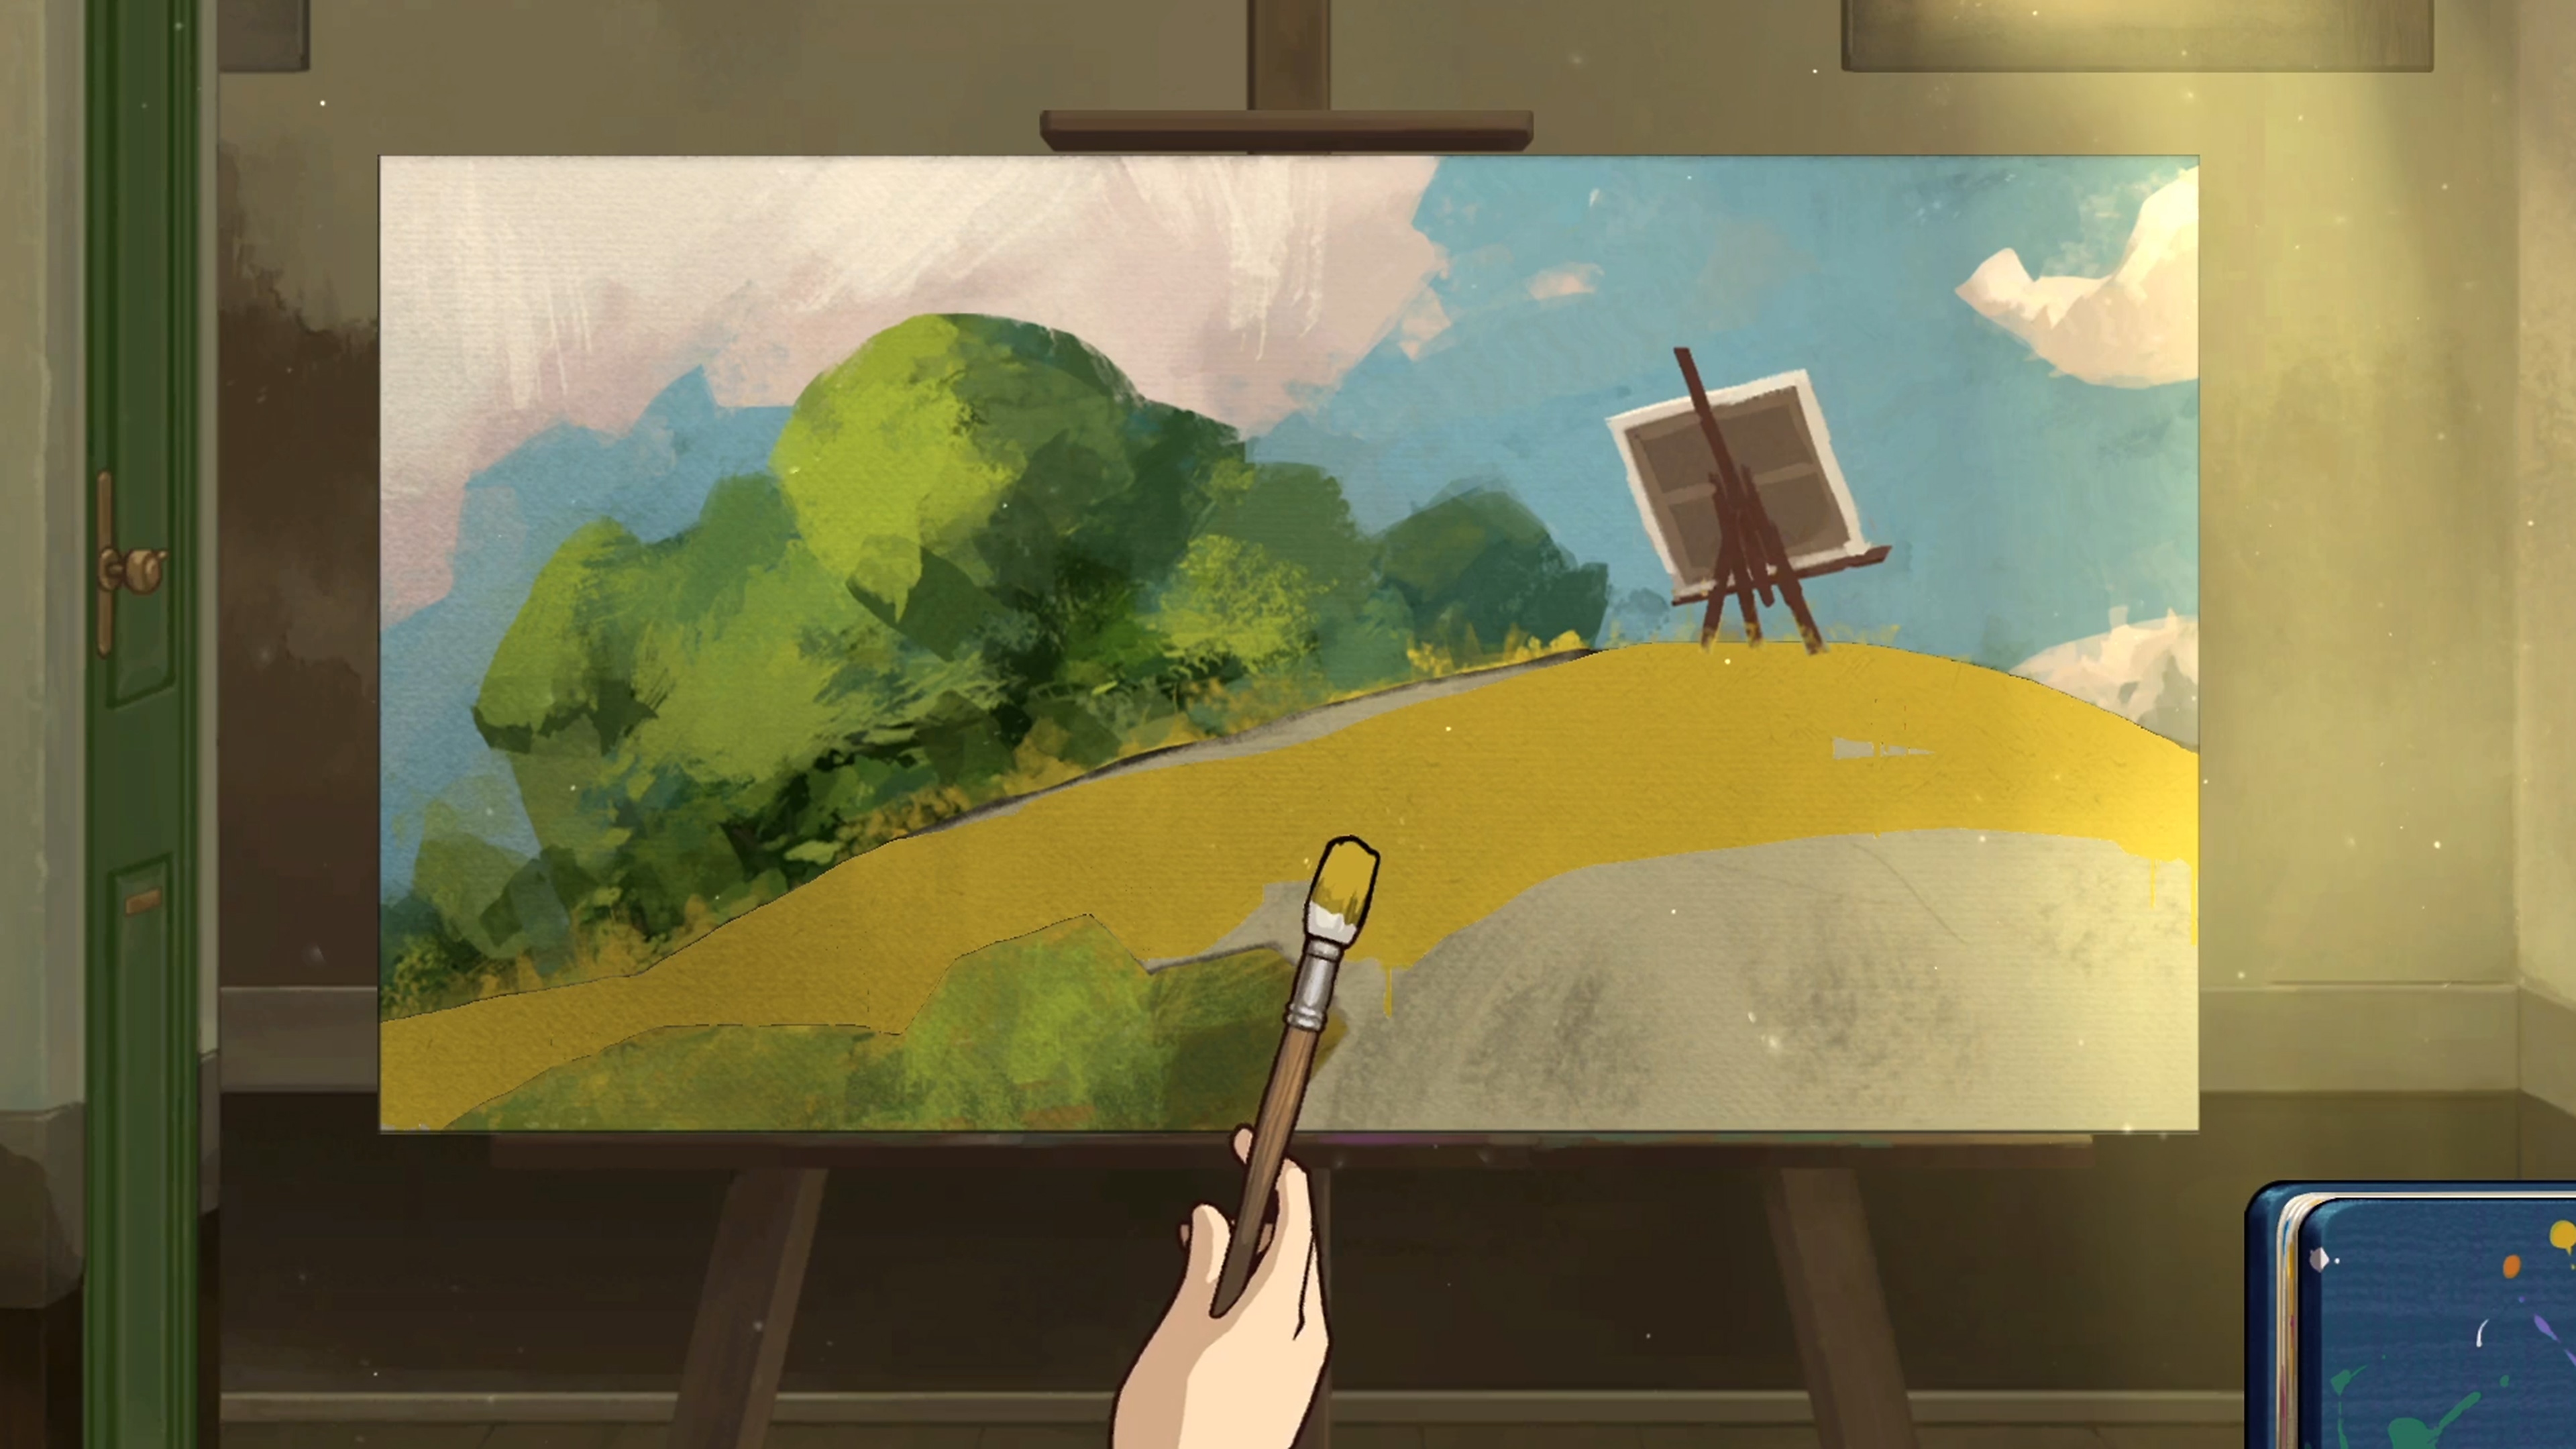 Behind the Frame: The Finest Scenery – zrzut ekranu przedstawiający malowidło z krajobrazem